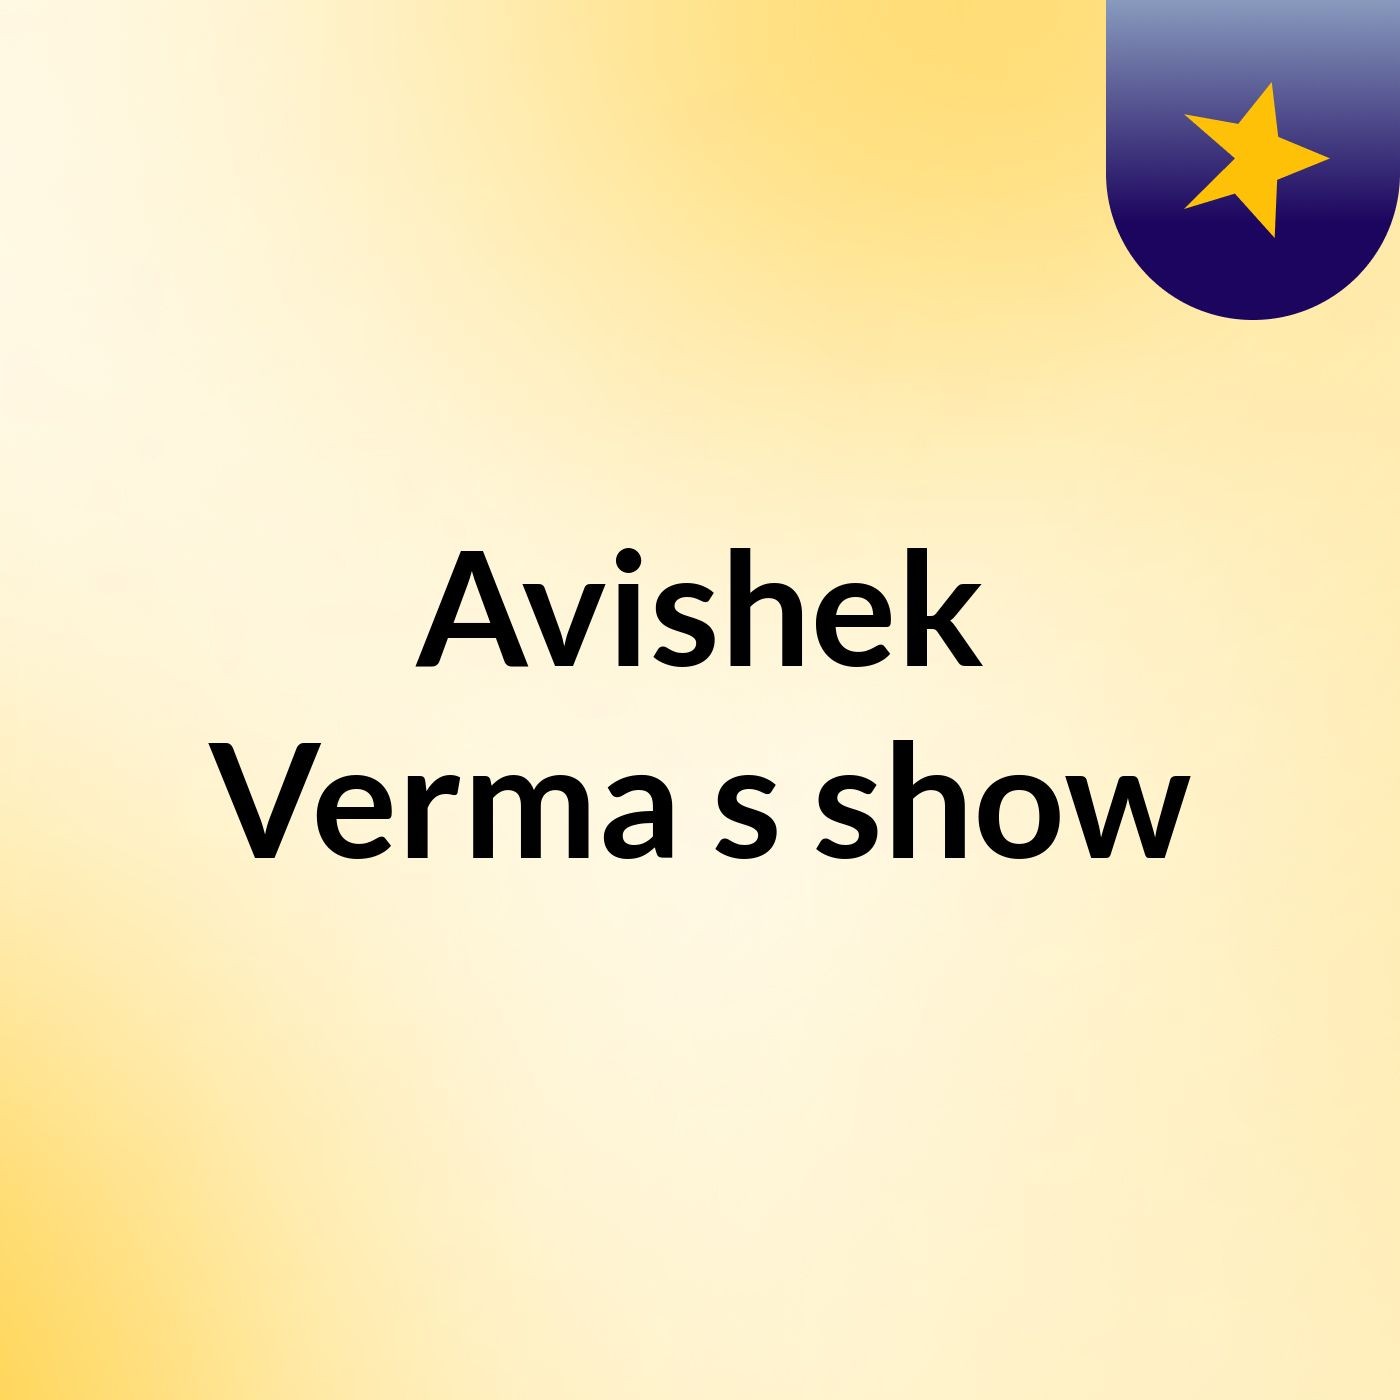 Avishek Verma's show